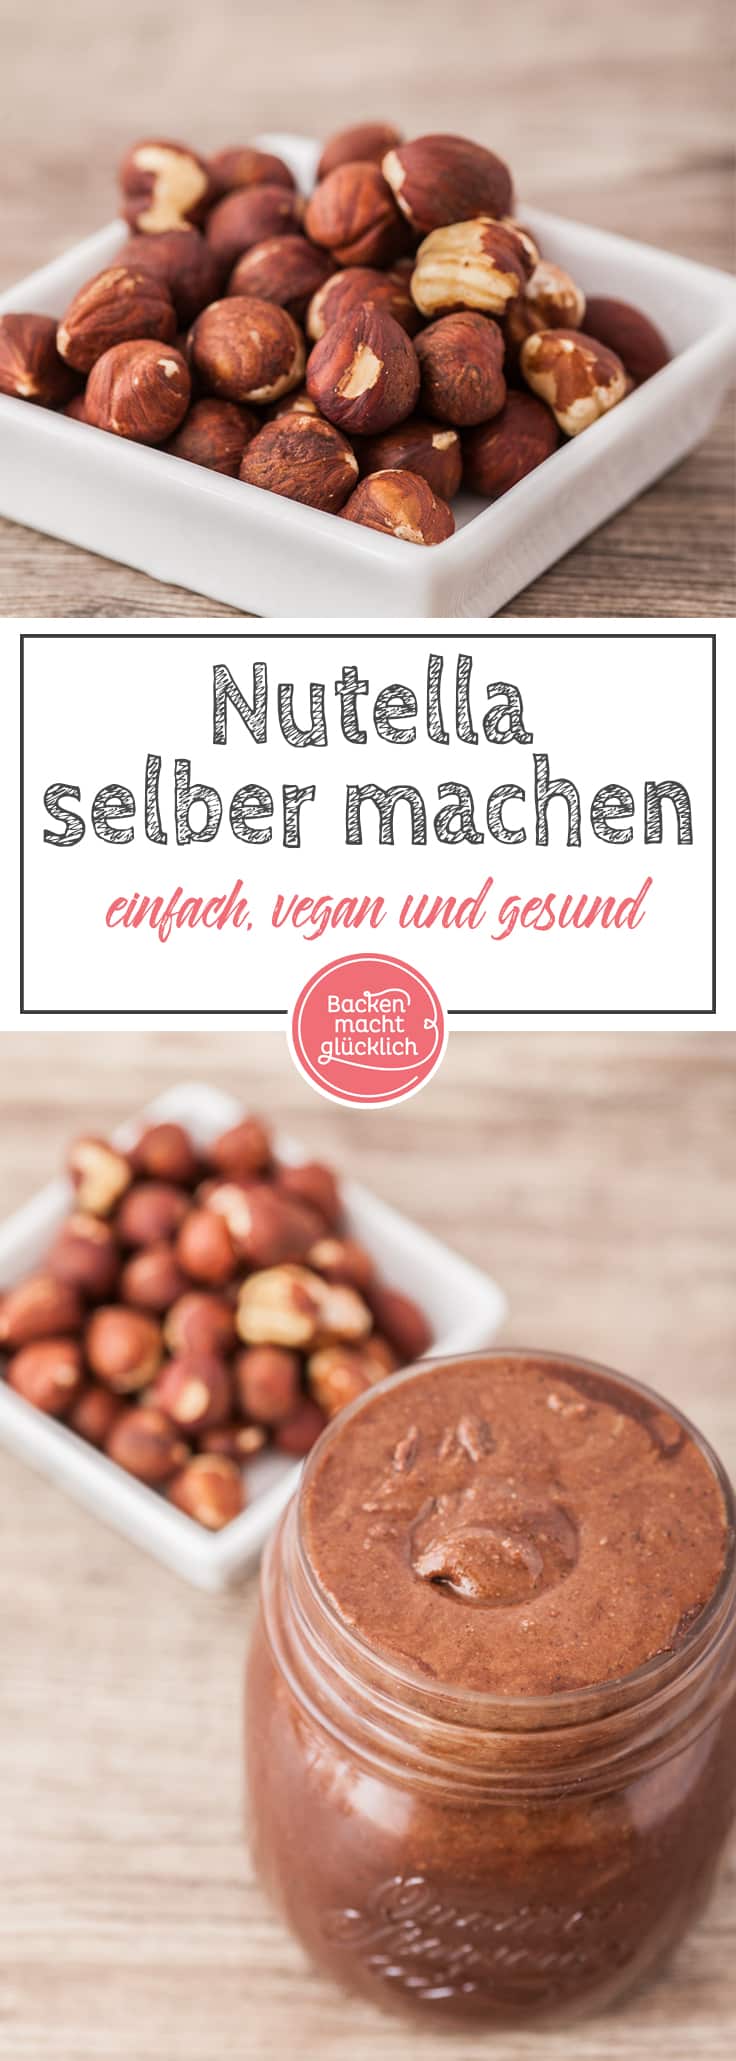 Gesundes Nutella selbermachen: Mit diesem einfach Rezept für Nuss-Nougat-Creme funktioniert´s! Egal, ob als Low Carb Nutella, veganes Nutella, zuckerfrei oder ohne Nüsse